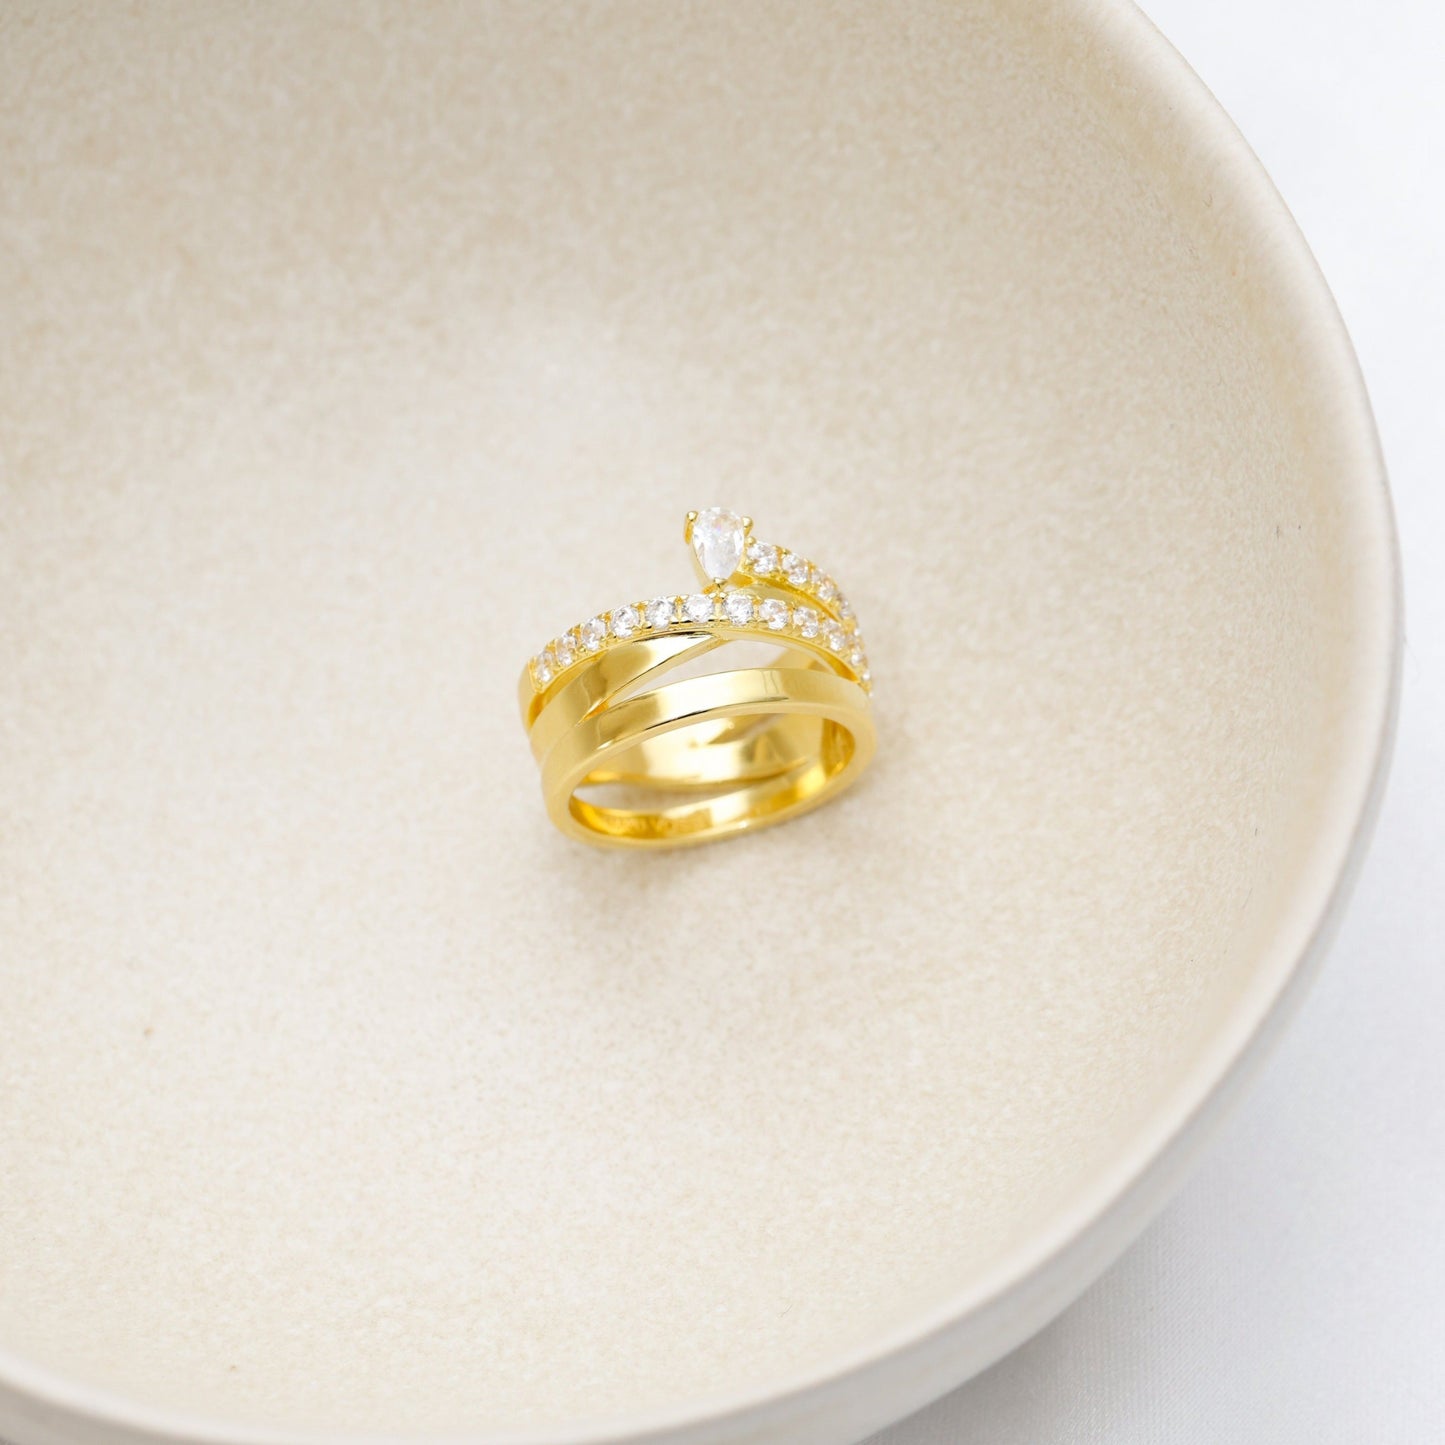 Anya ring - gold plated